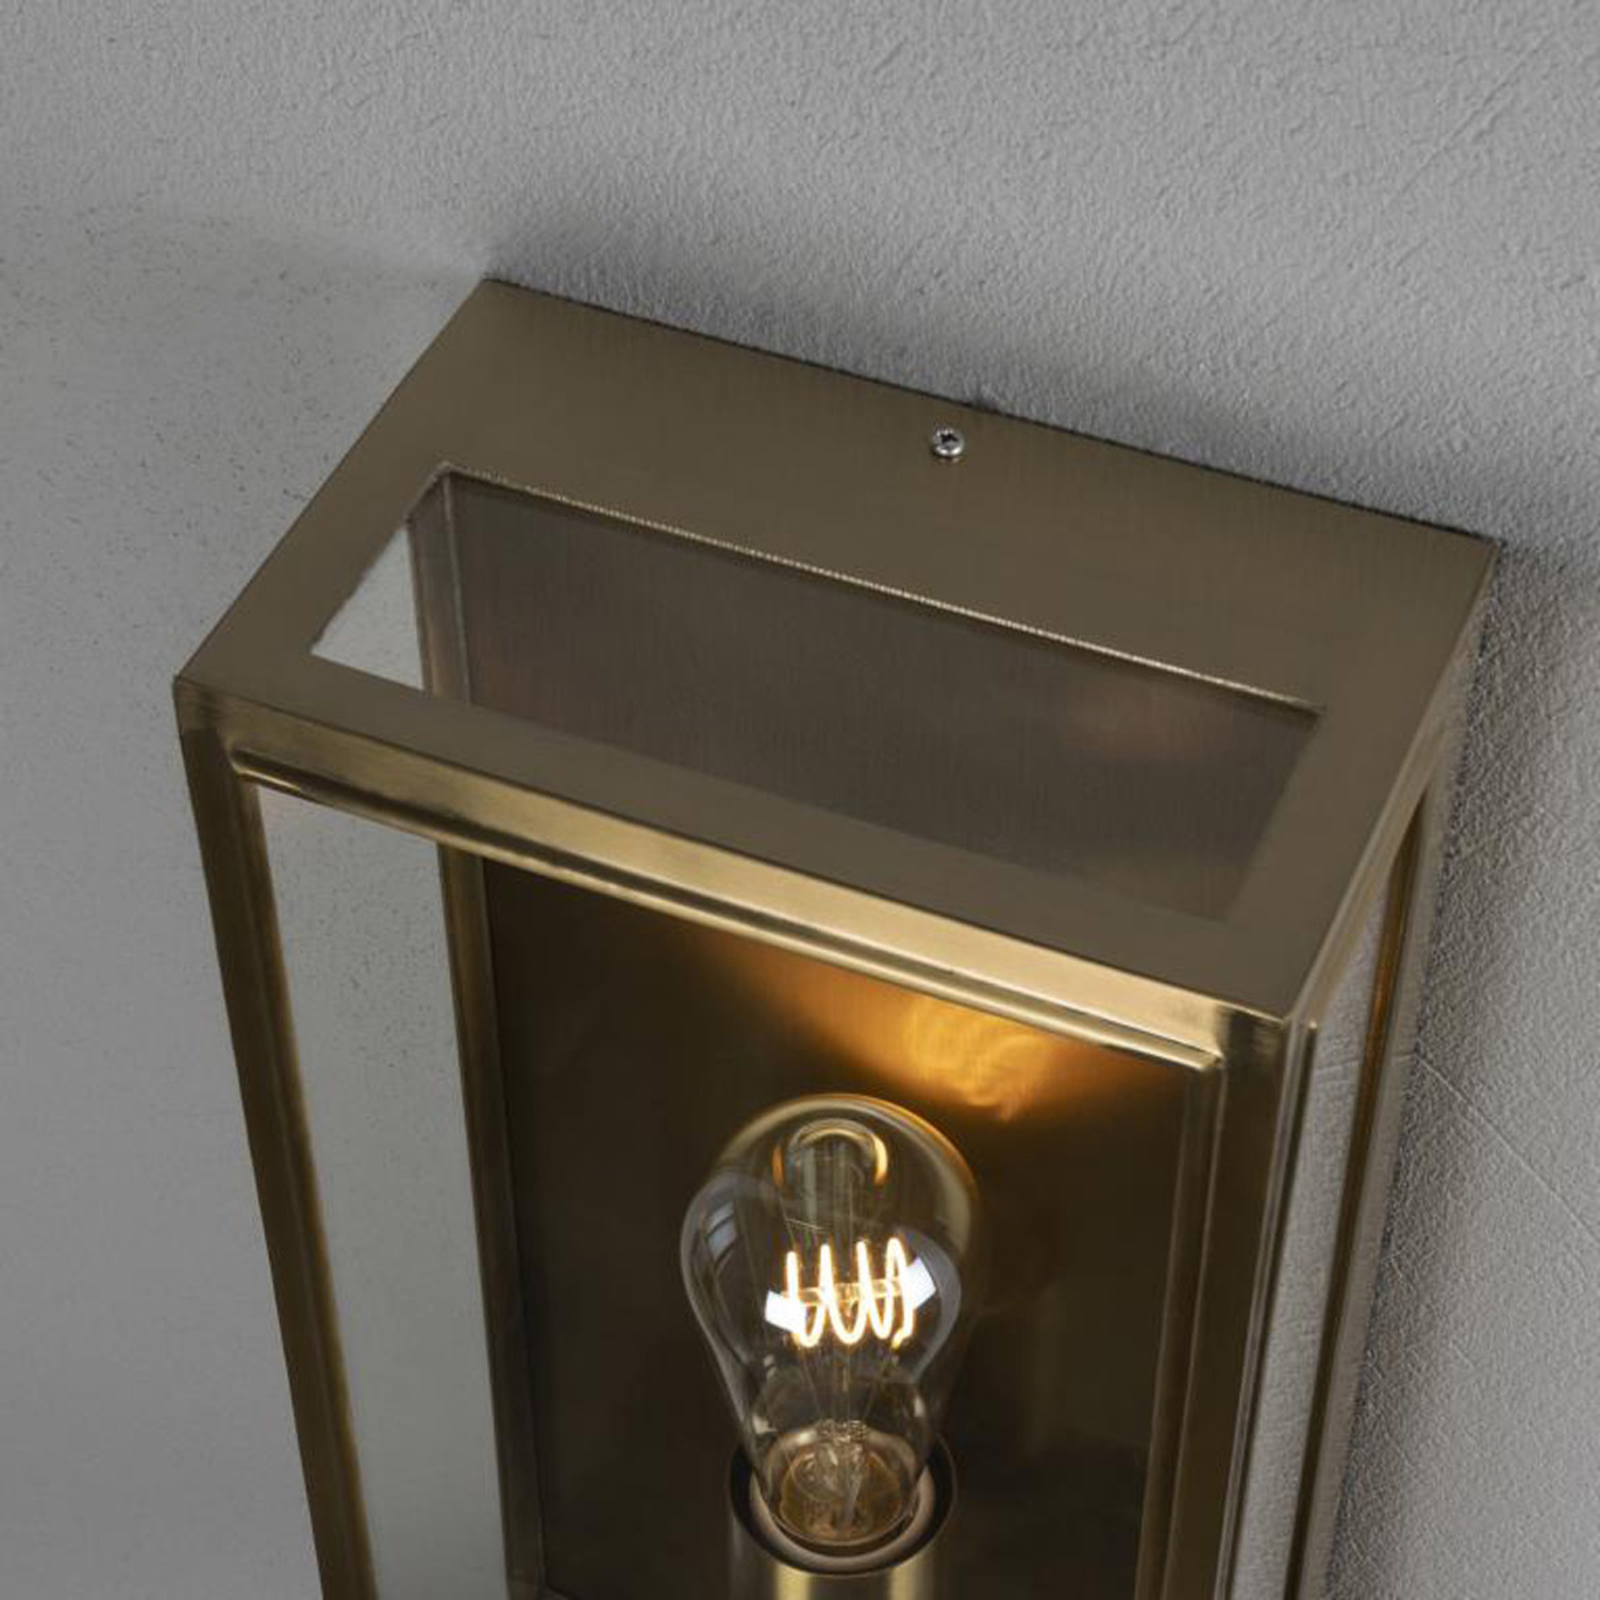 Kültéri fali lámpa Carpi, sárgaréz, szélesség 20.5cm